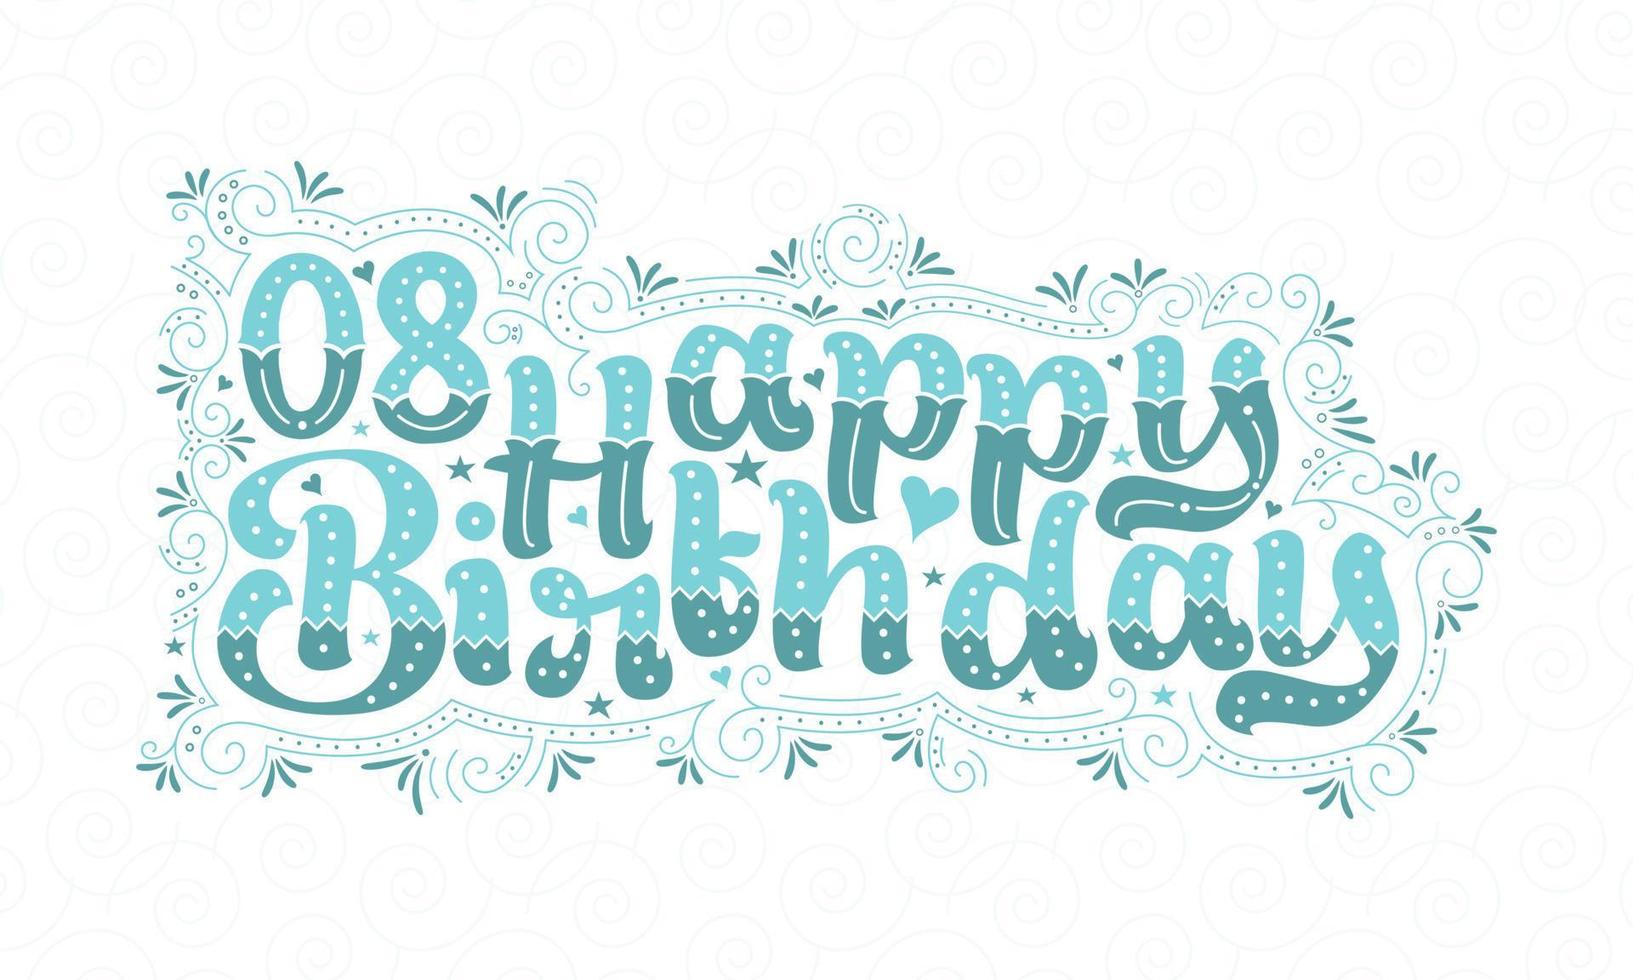 8e gelukkige verjaardag belettering, 8 jaar verjaardag mooie typografie design met aqua stippen, lijnen en bladeren. vector